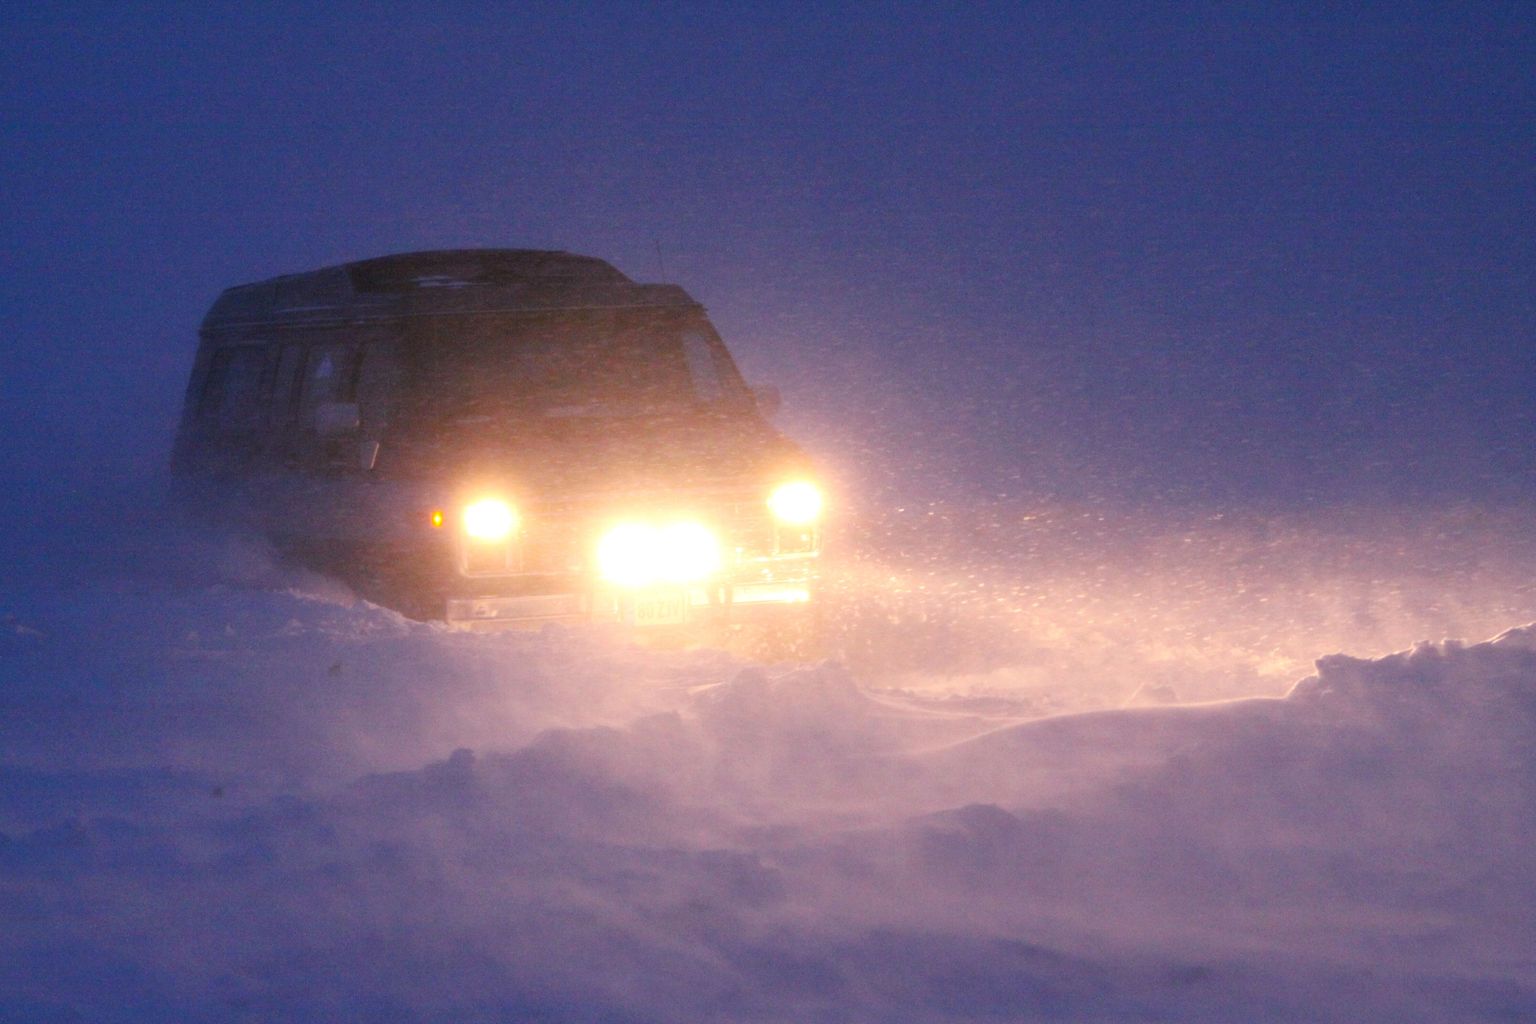 Vanasõidukite talveralli lõppes Pärnu lahel lumetormis. Pildil ralliekipaaž "Miami politsei".